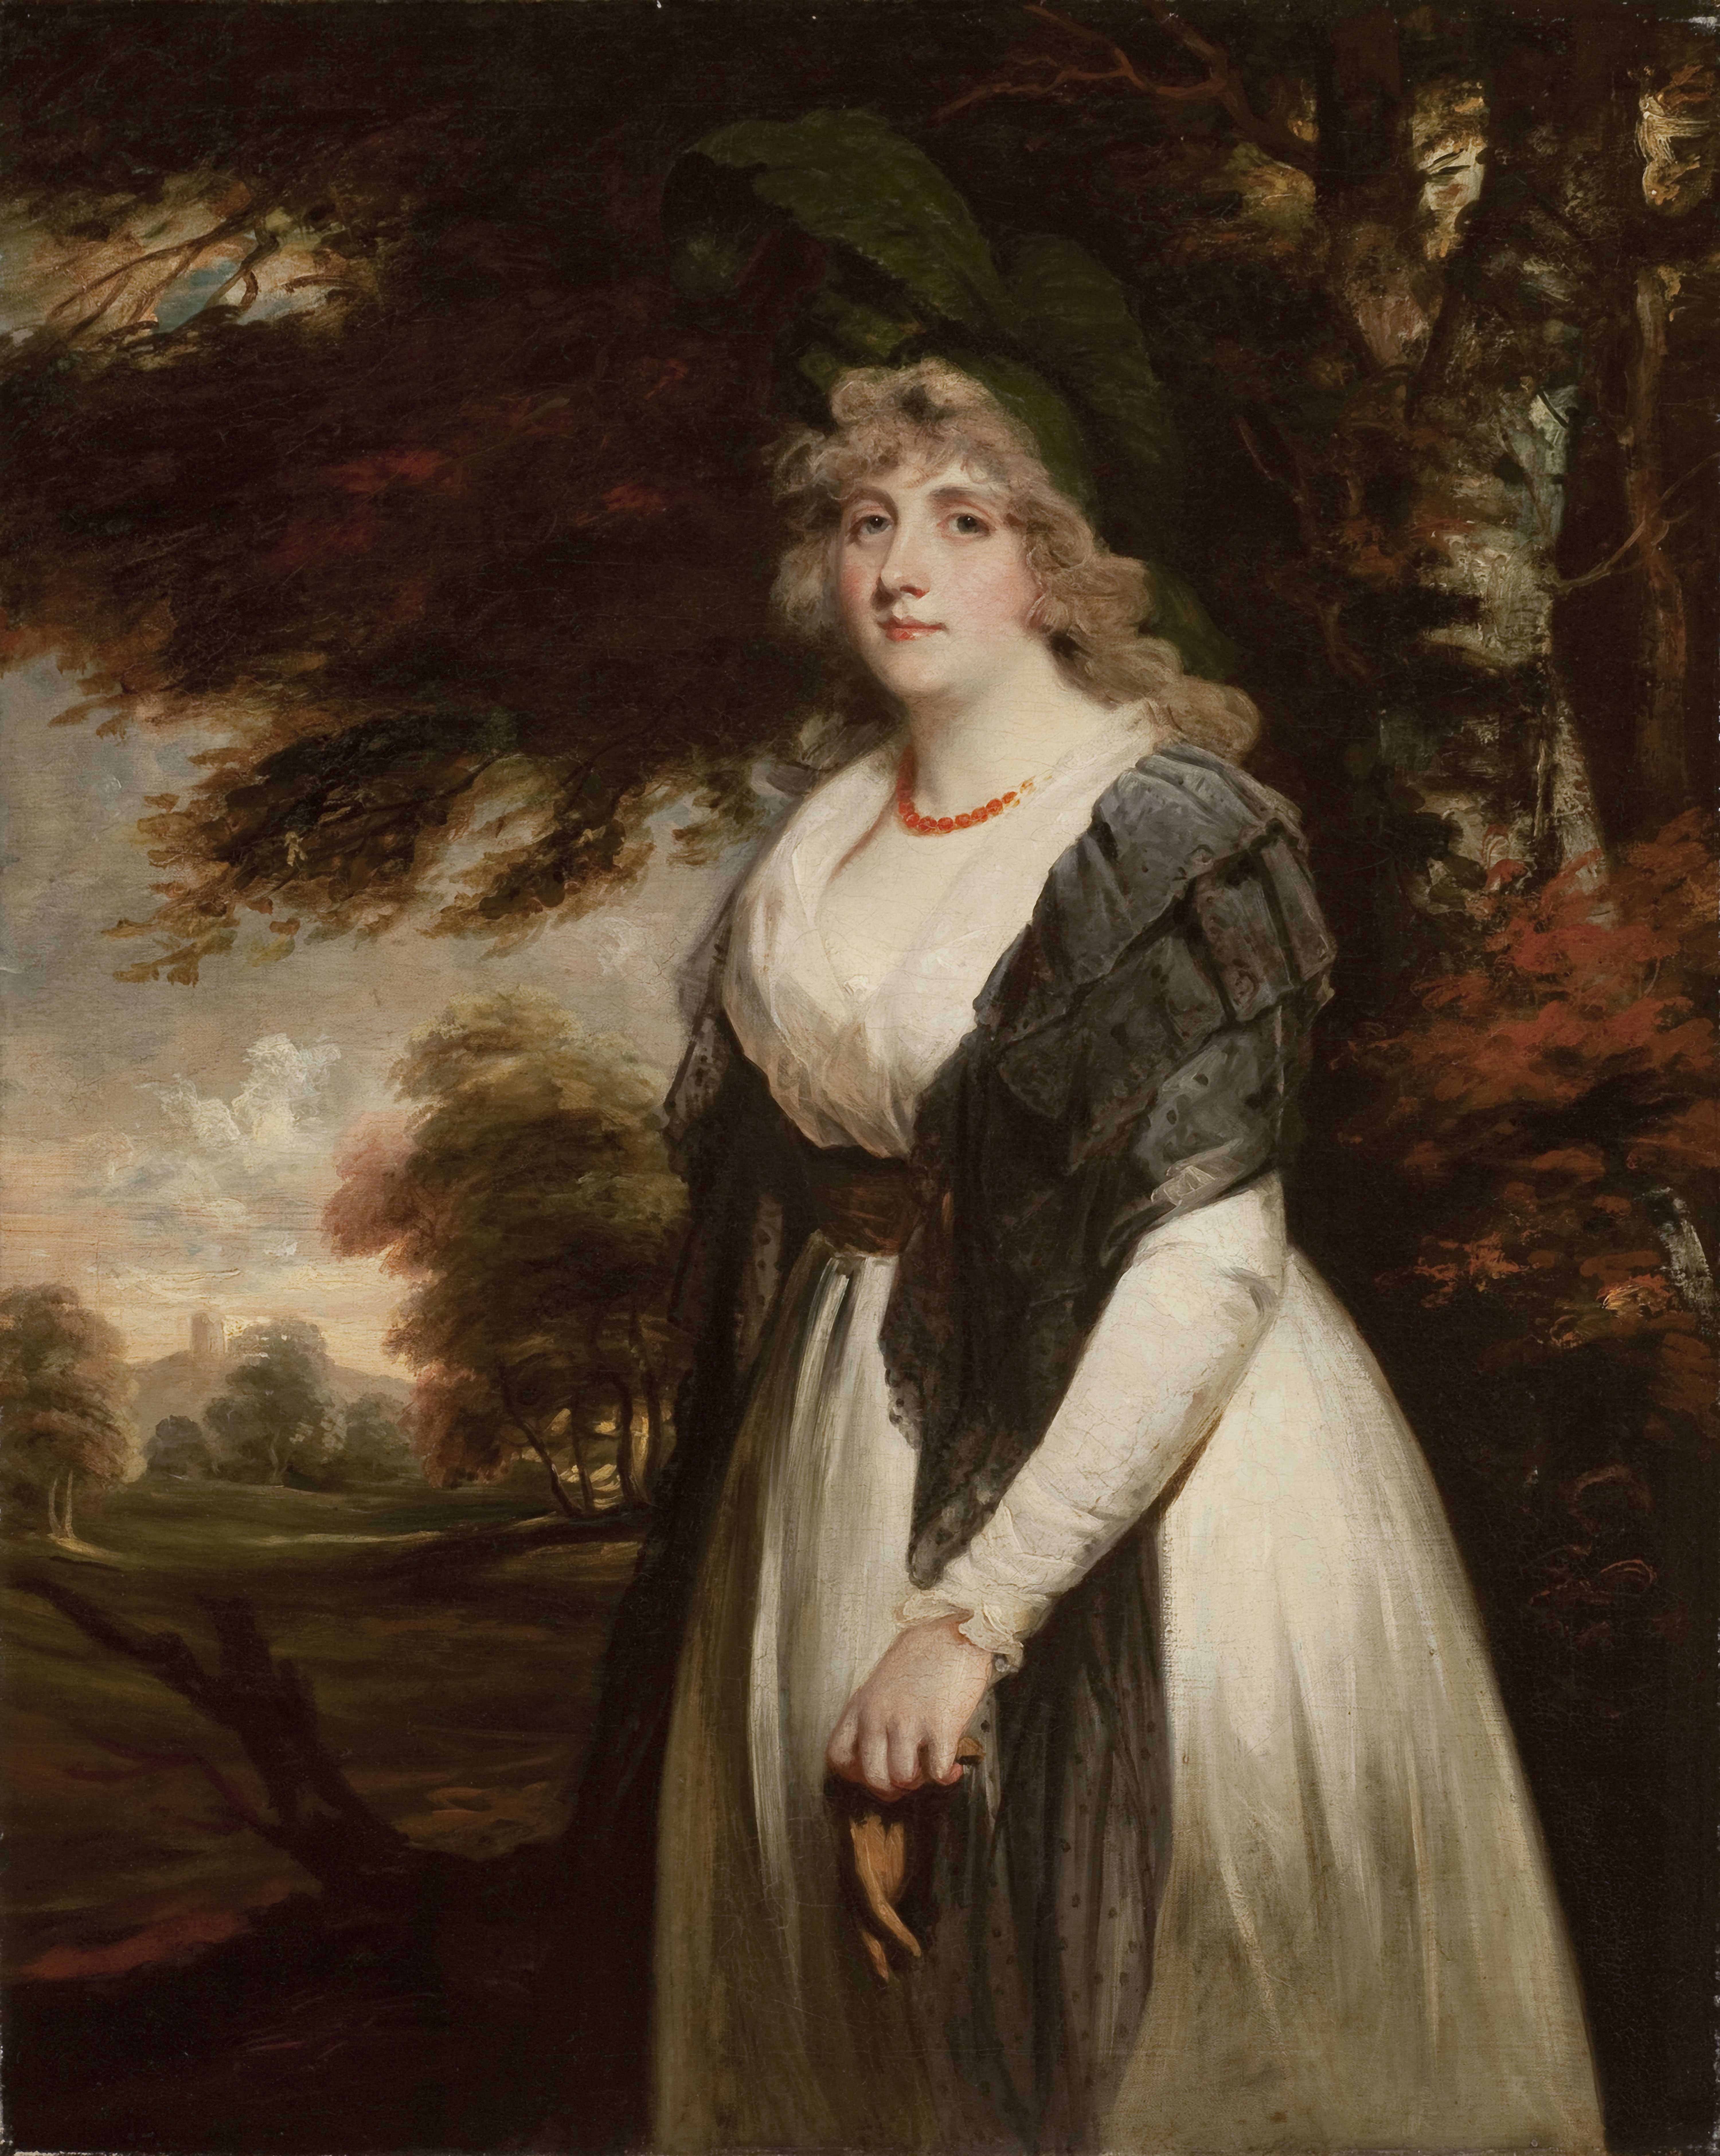 John Hoppner (English, 1758–1810), "Elizabeth James Parkyns" (1767–1797), 1794, oil on canvas. Taft Museum of Art, 1931.470